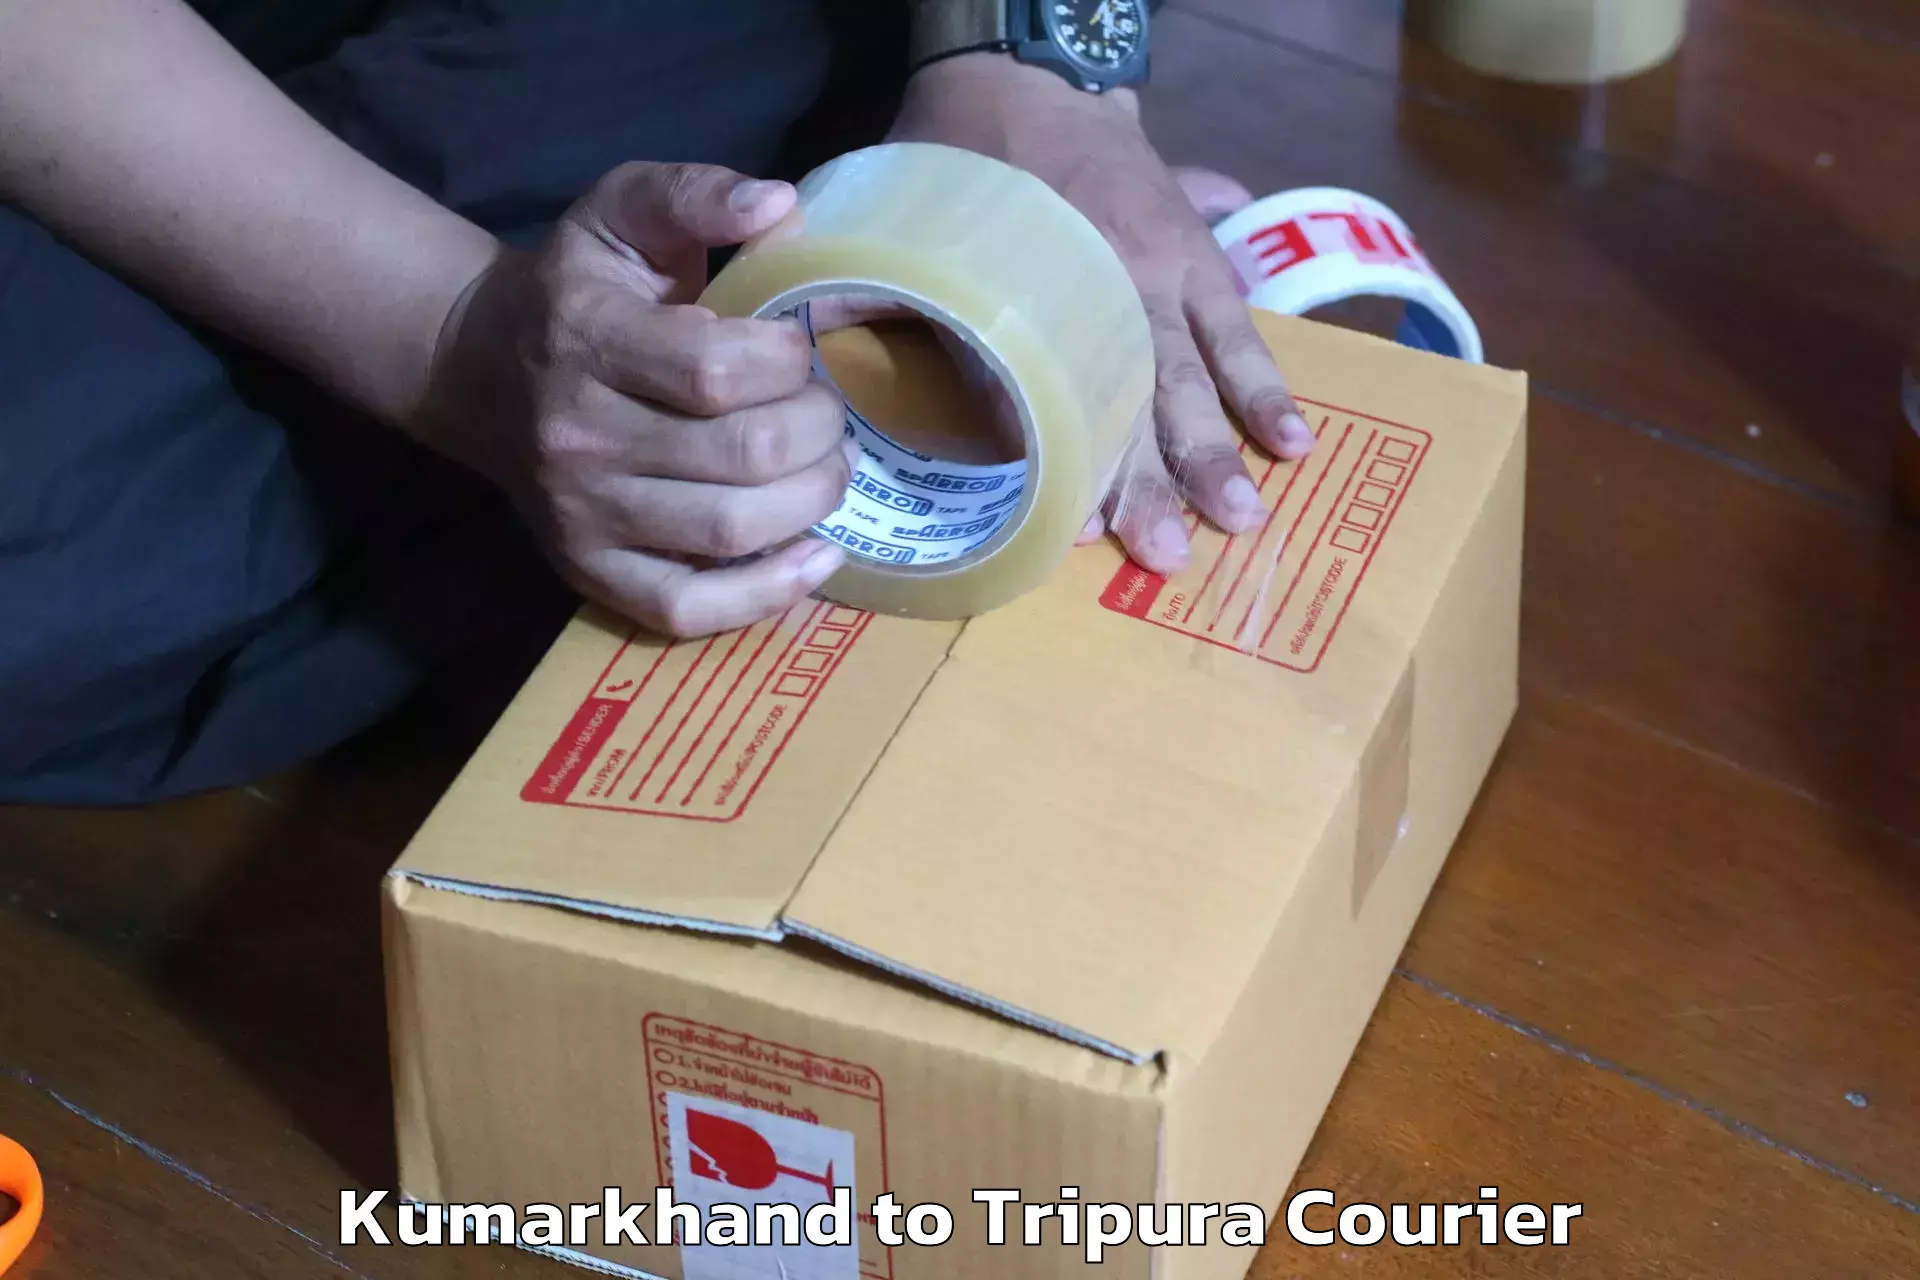 Home goods moving company Kumarkhand to Kamalpur